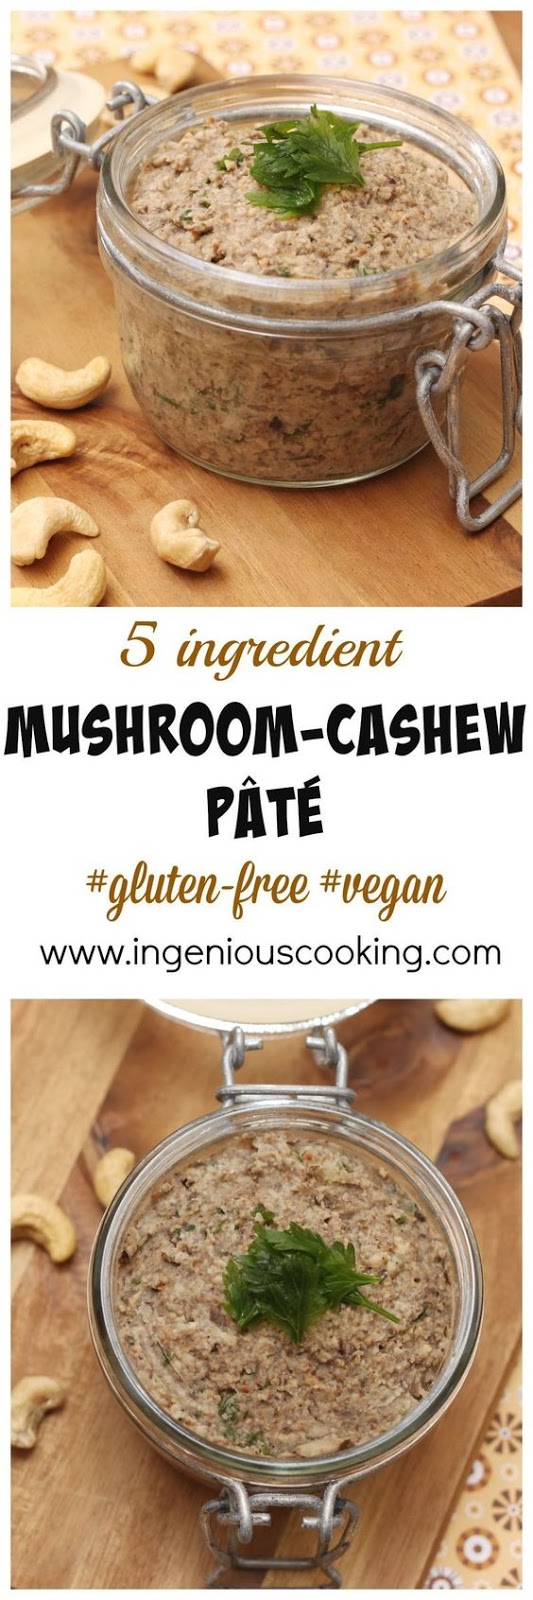 #Vegan mushroom cashew pate #glutenfree